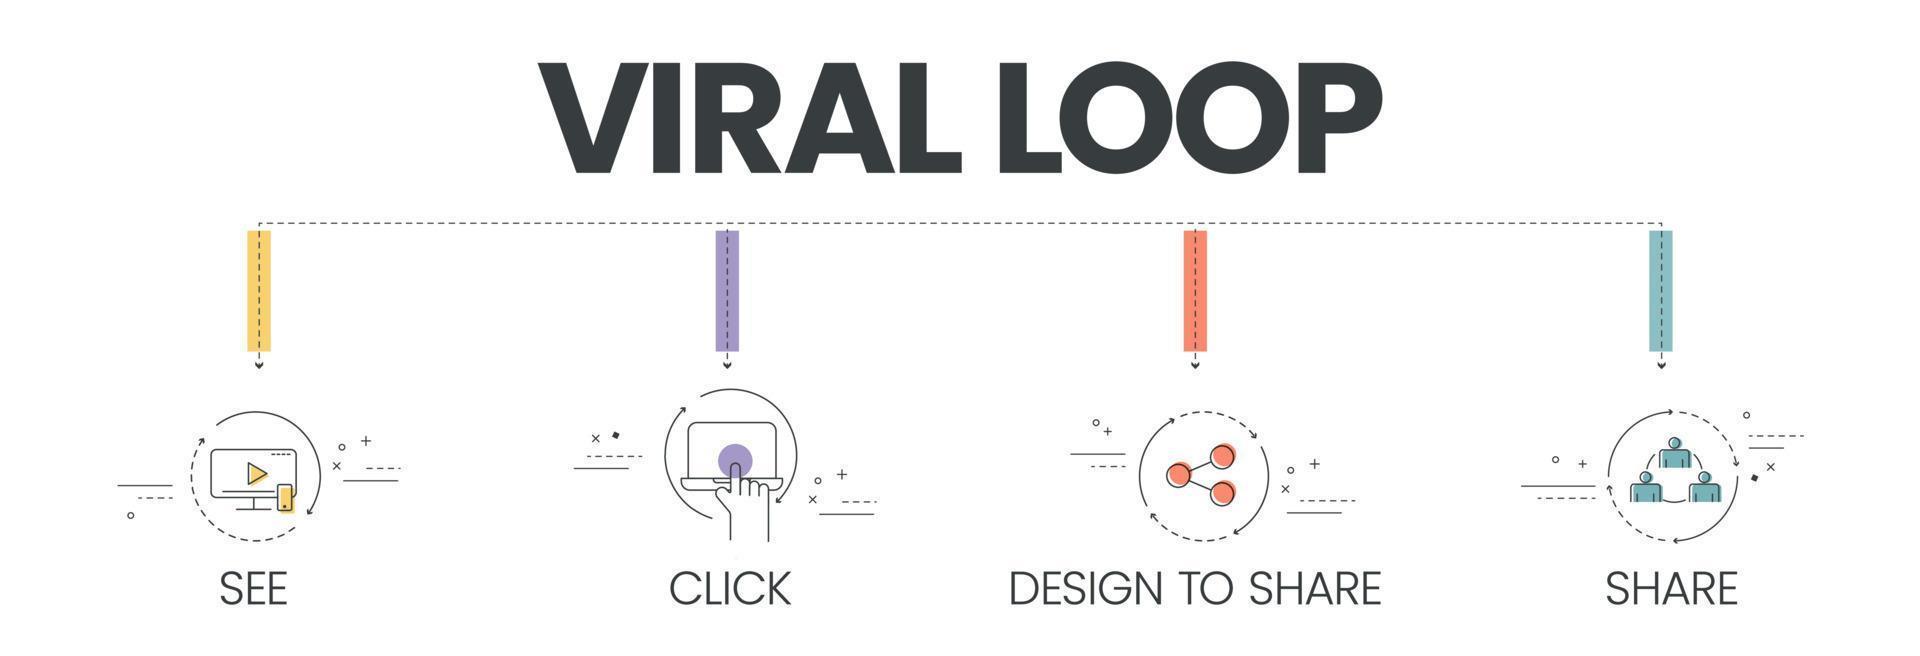 vektorbannern med ikoner i viral loop-konceptet har 4 steg att analysera såsom se, klicka, designa för att dela och dela. mall för banner för innehållsmarknadsföring. affärsinfografik för bildpresentation. vektor